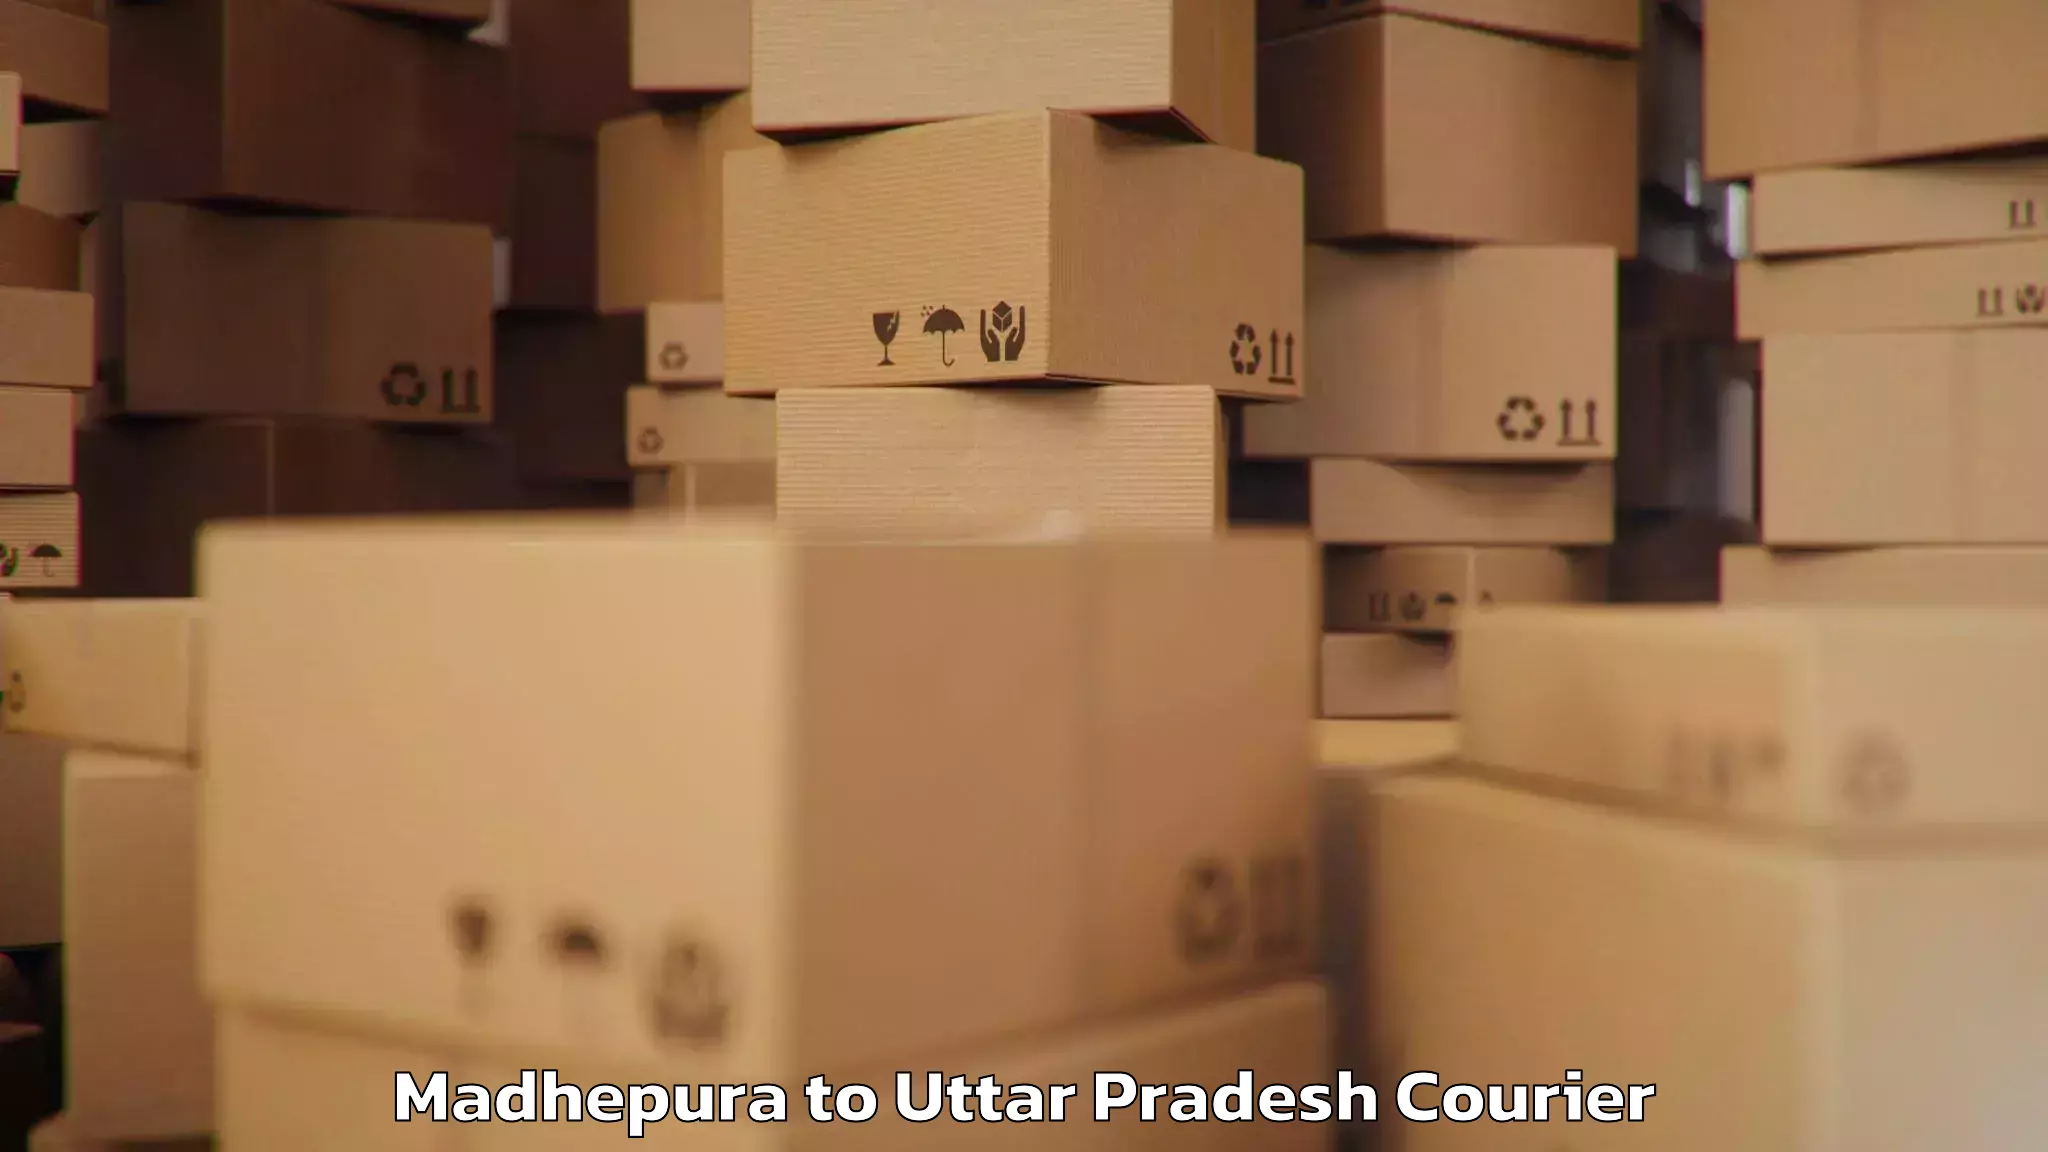 Baggage delivery support Madhepura to Gauri Bazar